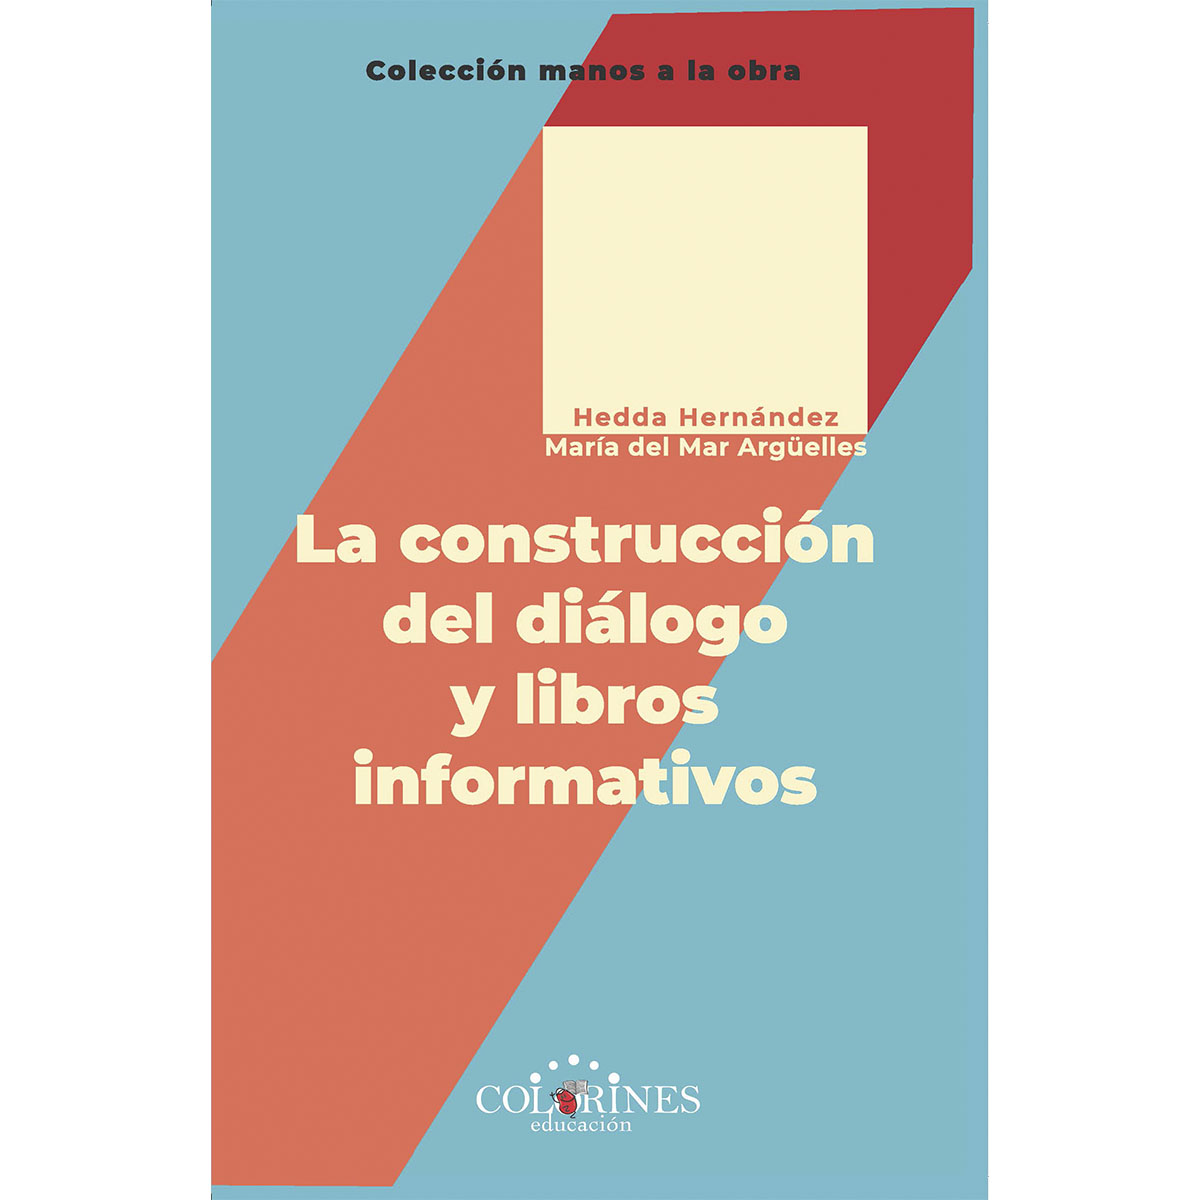 La construcción del diálogo y libros informativos